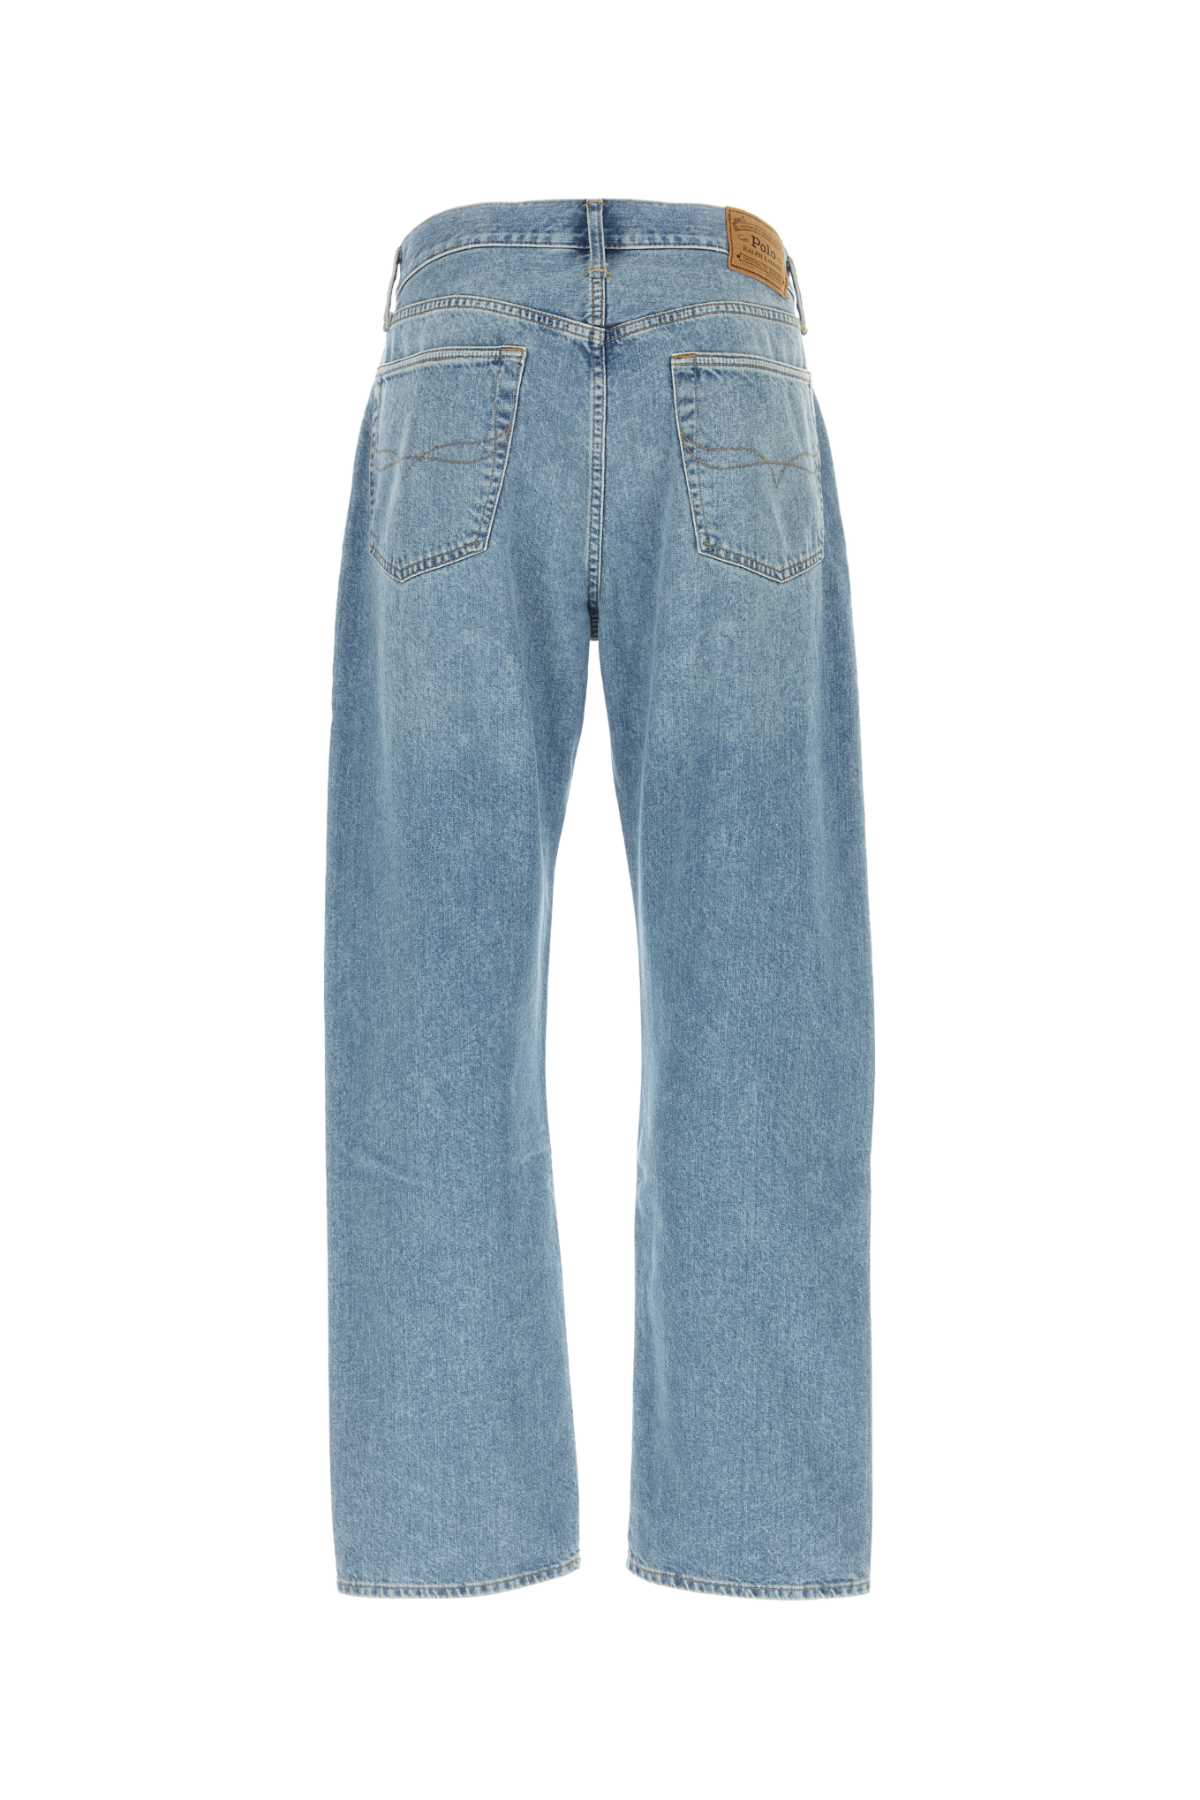 Polo Ralph Lauren Denim Jeans In Lightblue